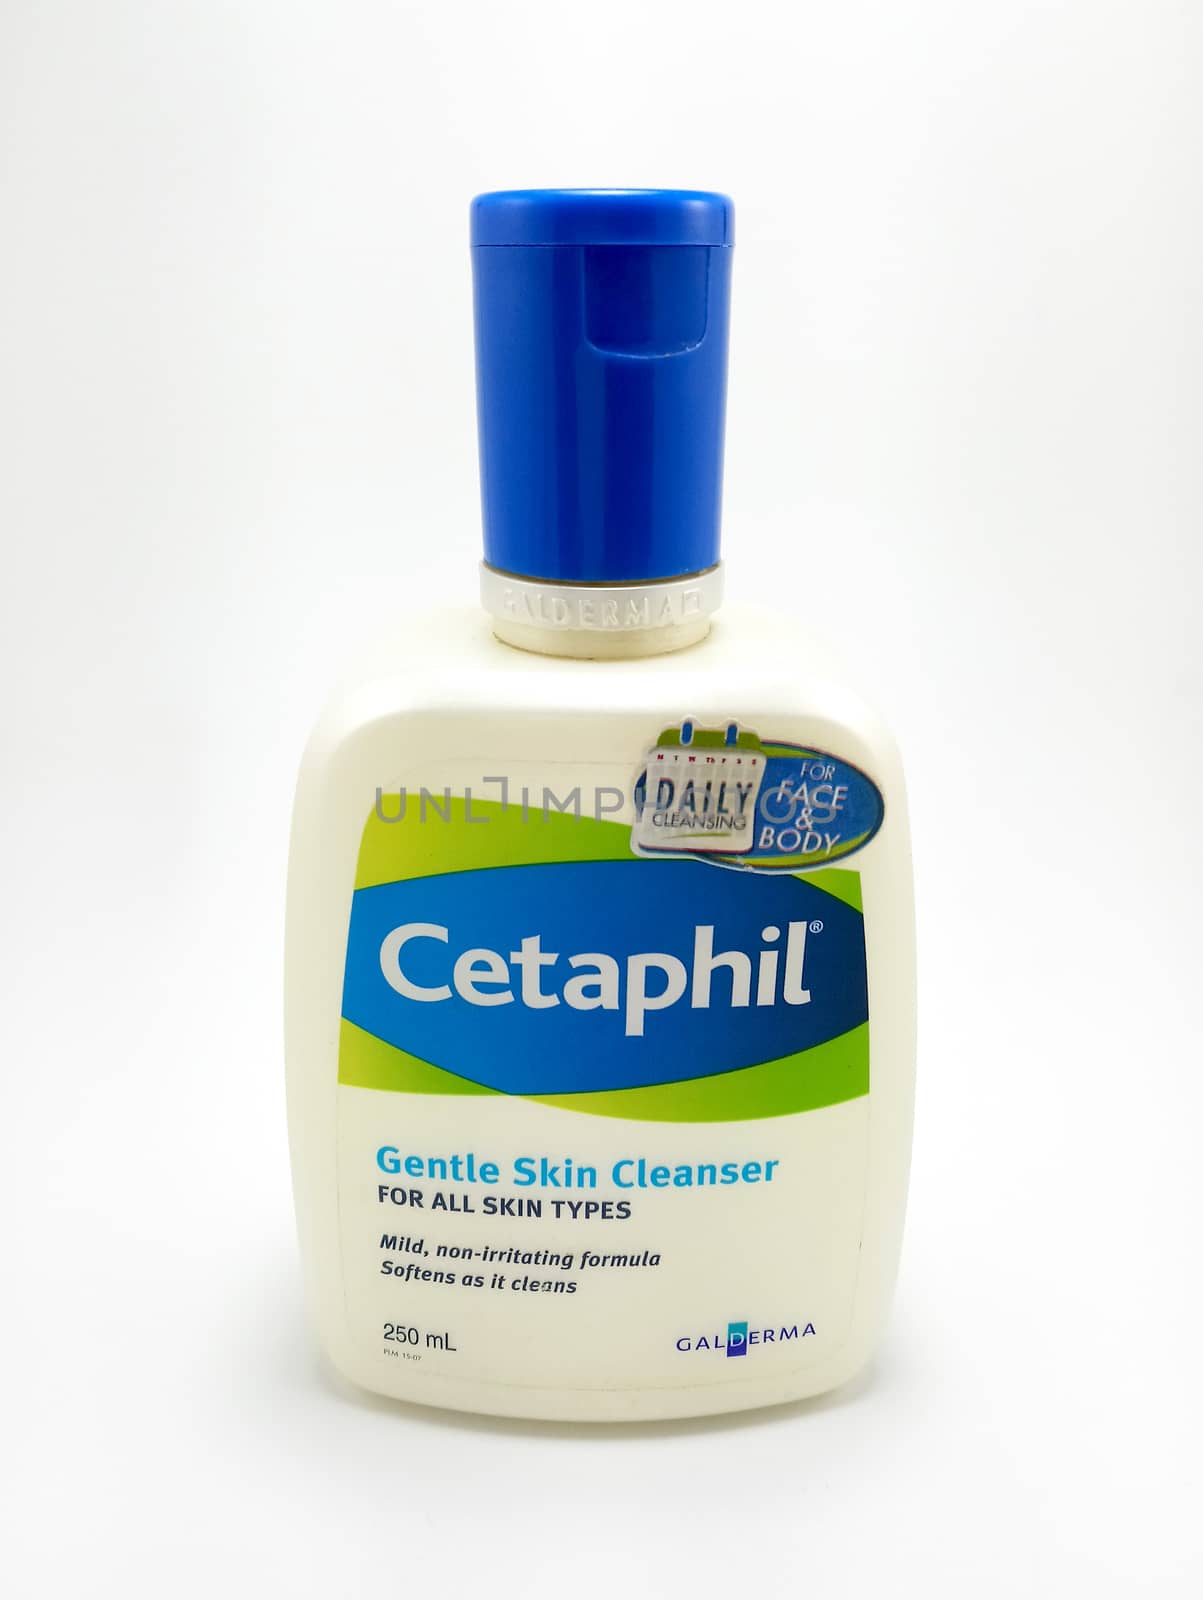 MANILA, PH - JUNE 23 - Cetaphil gentle skin cleanser on June 23, 2020 in Manila, Philippines.